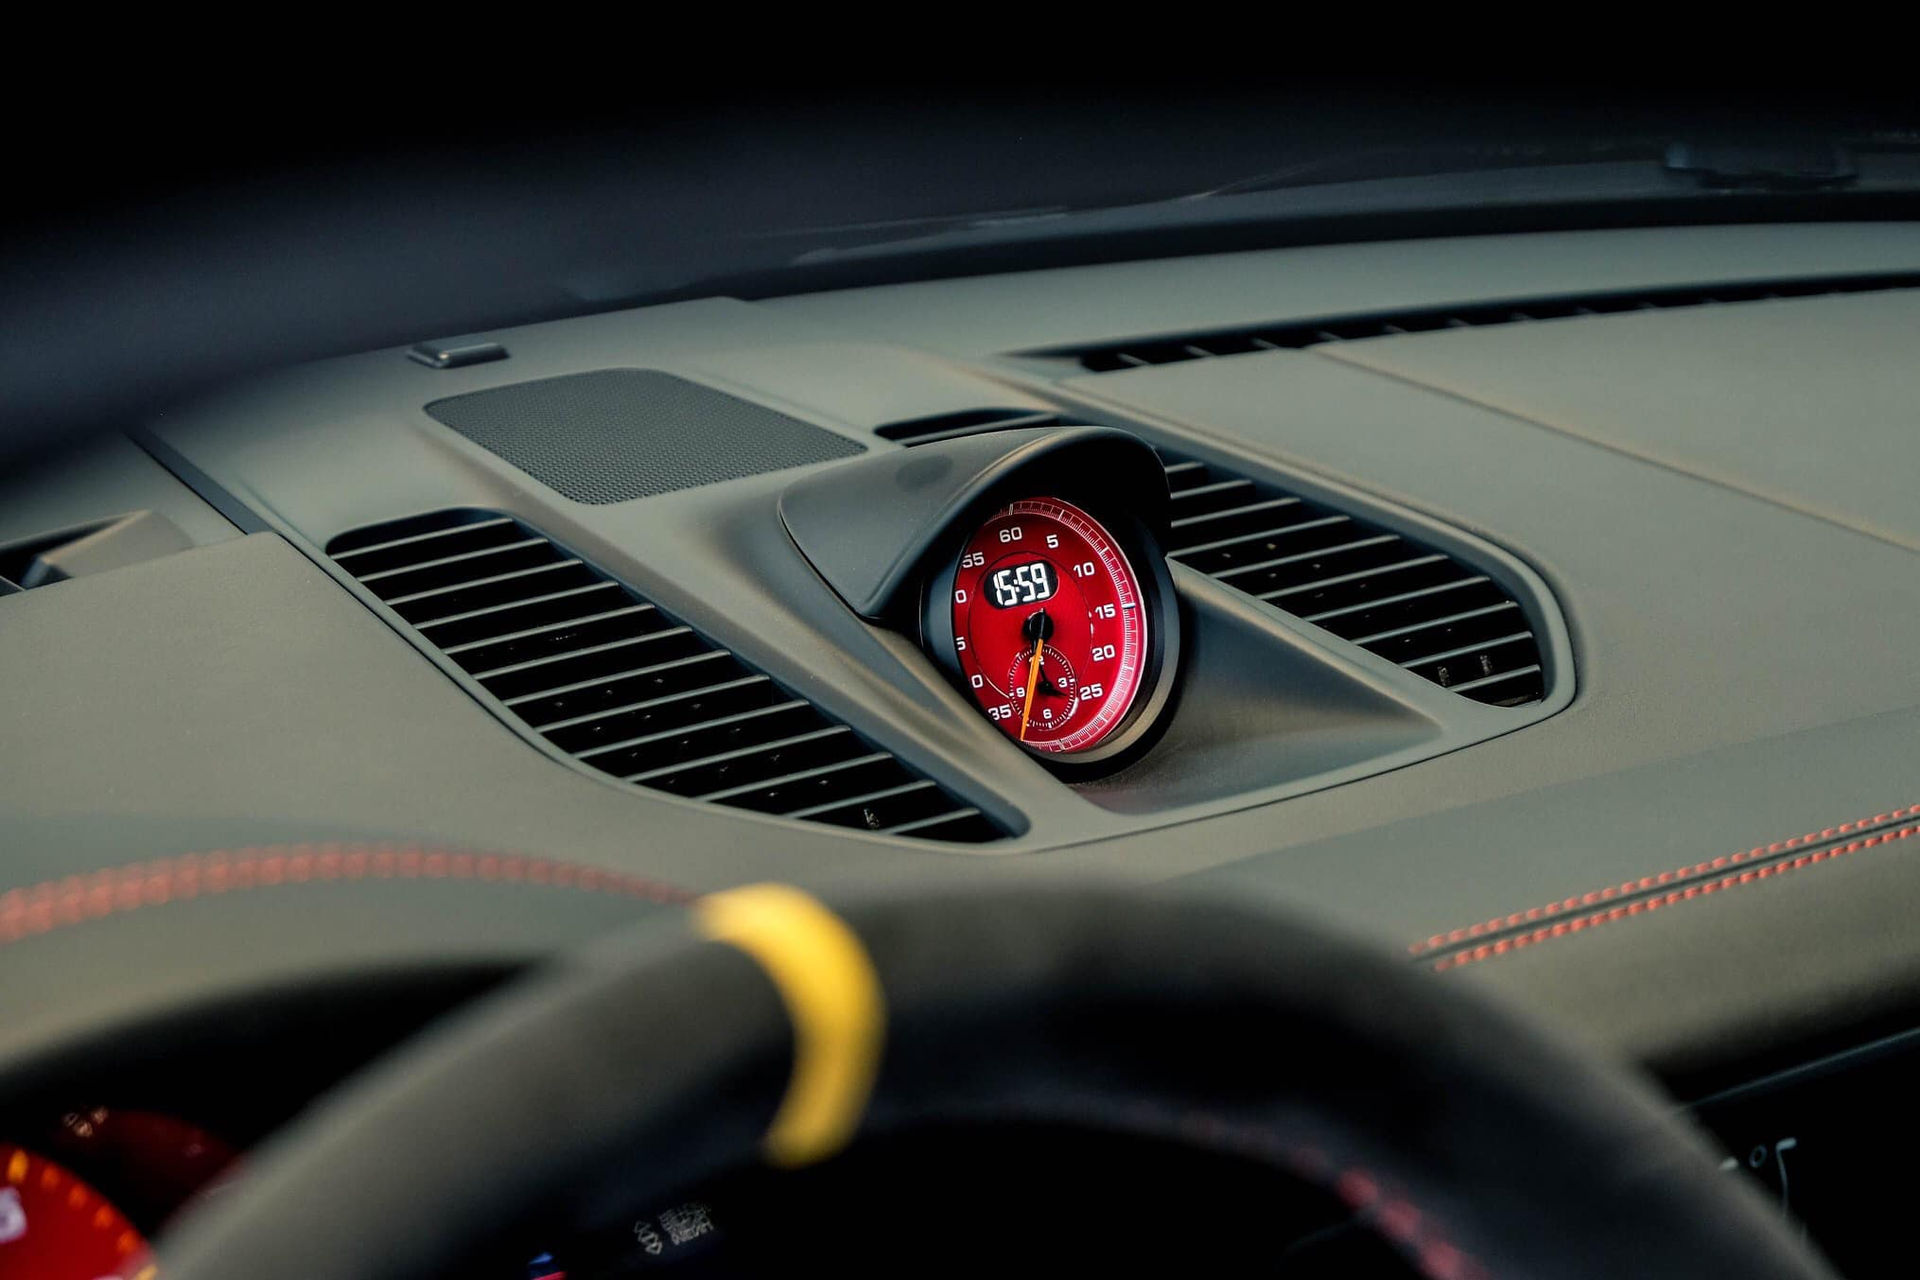 Đồng hồ trung tâm với tông màu đỏ tạo điểm nhấn. Các chức năng Connect Plus và ứng dụng chỉ số đường đua của Porsche (Porsche Track Precision) trang bị tiêu chuẩn, cho phép ghi lại chi tiết, hiển thị và phân tích dữ liệu lái xe trên điện thoại thông minh.